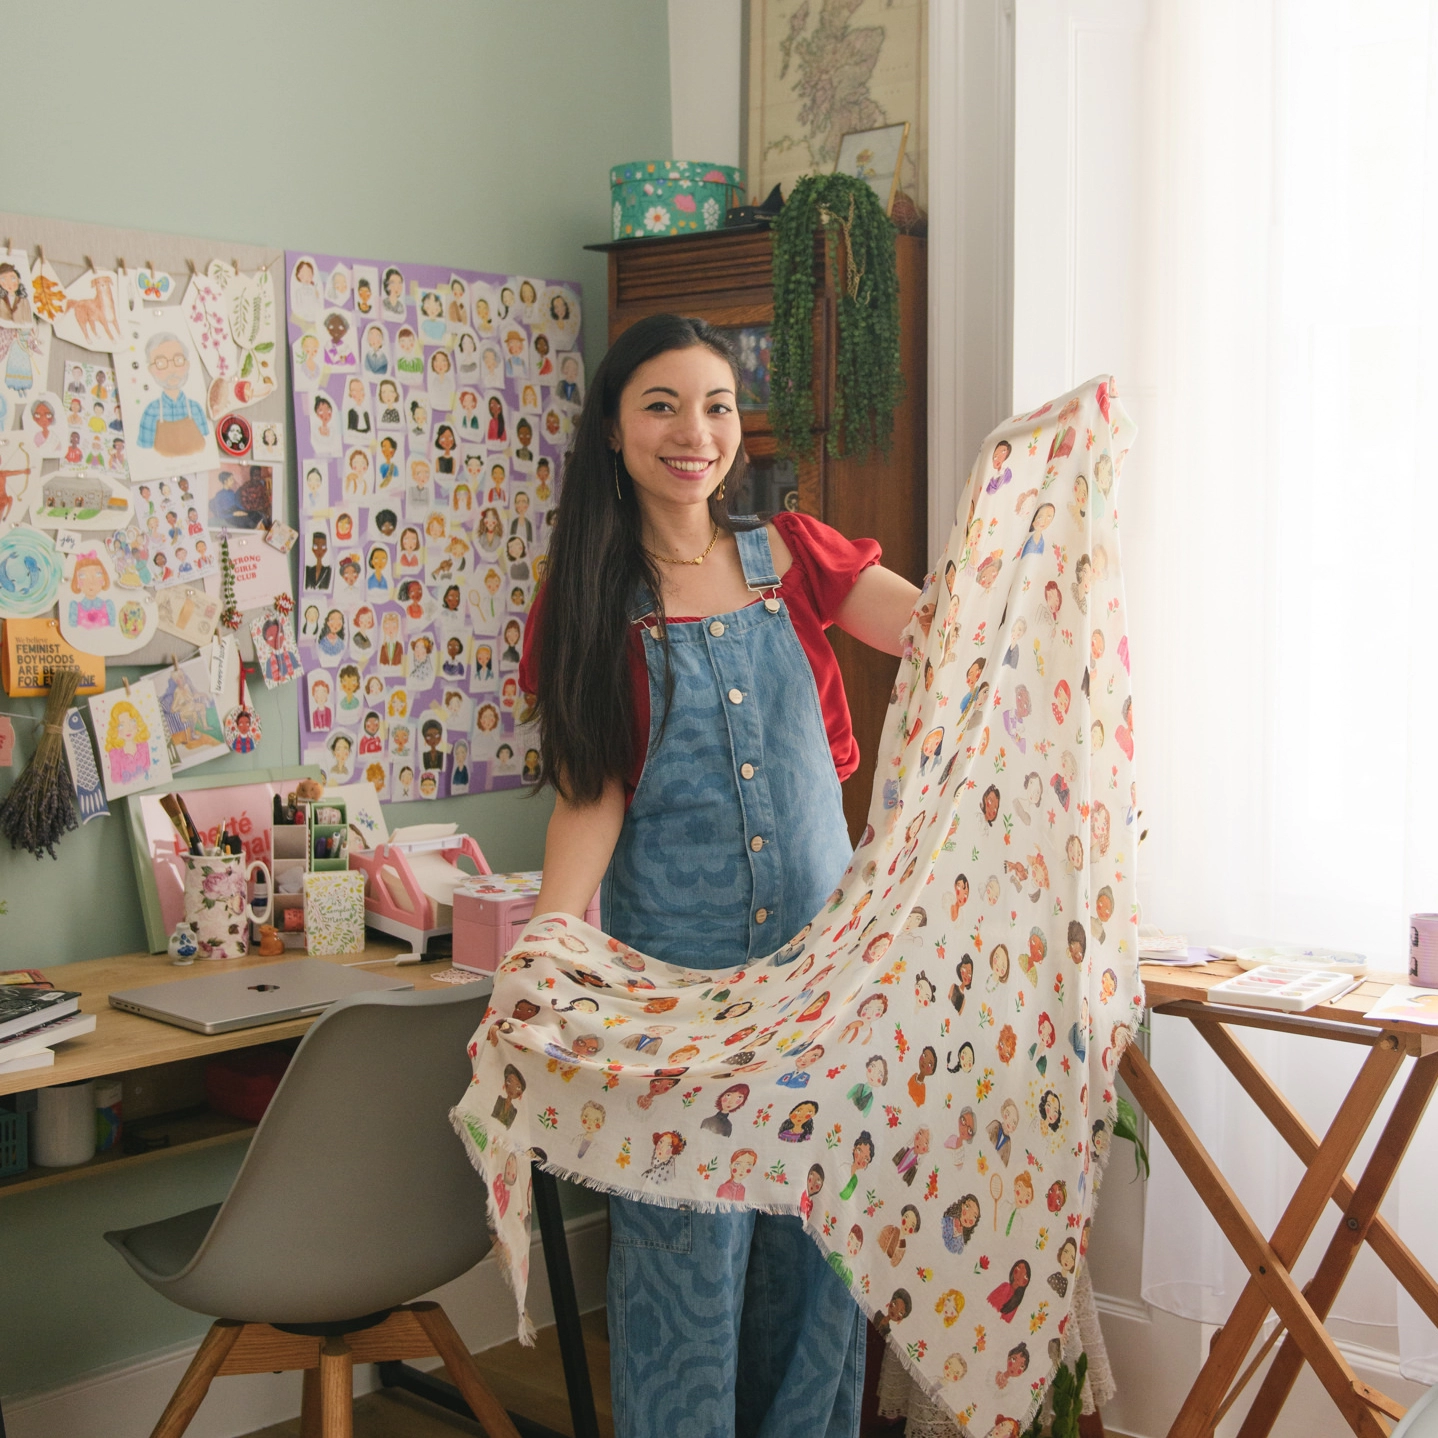 Eilidh designer of Book of Deer standing in her studio holding an iconic women blanket